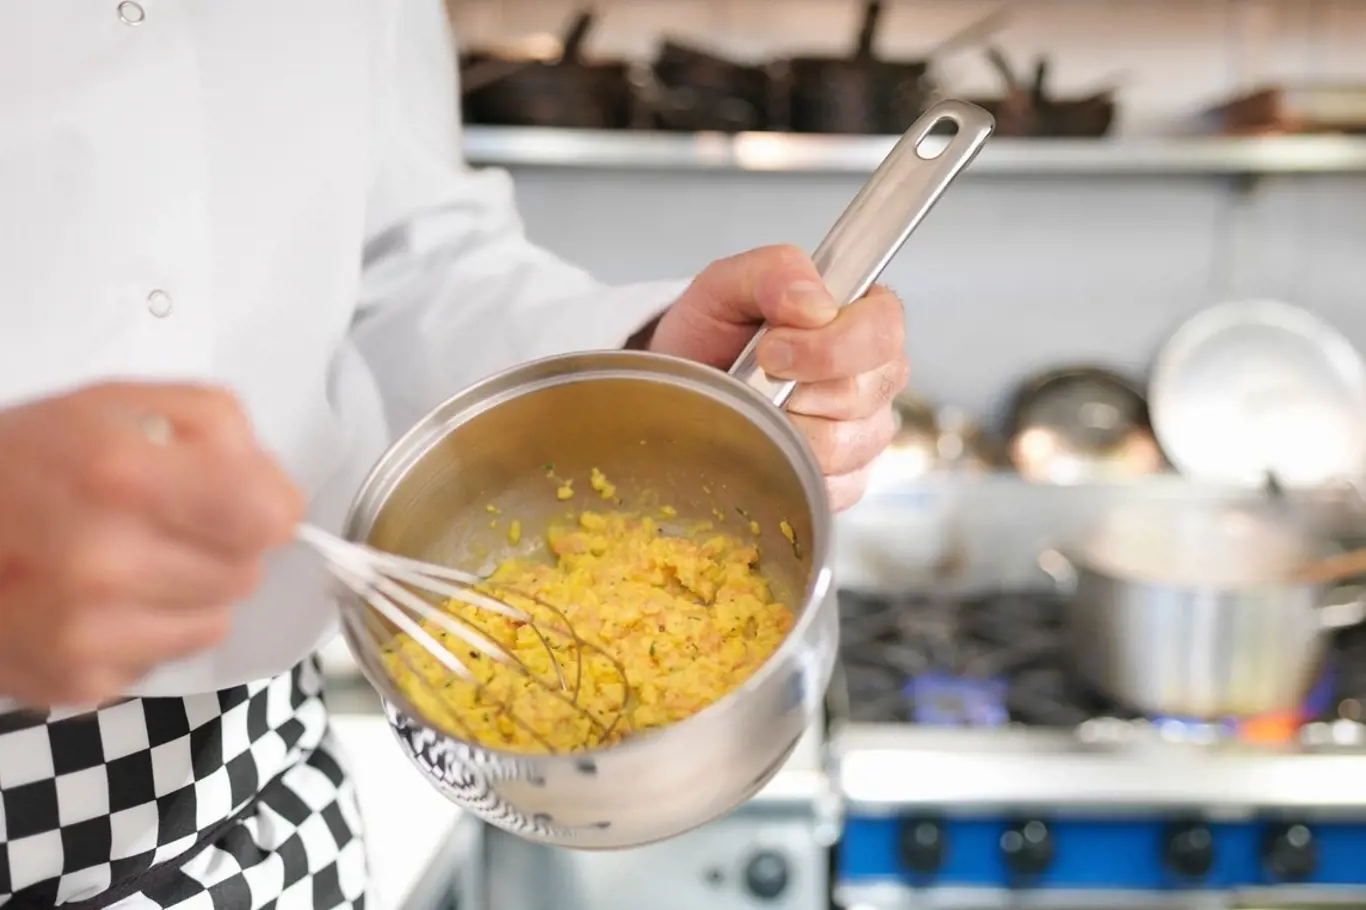 Jak připravit míchaná vajíčka jako šéfkuchař?